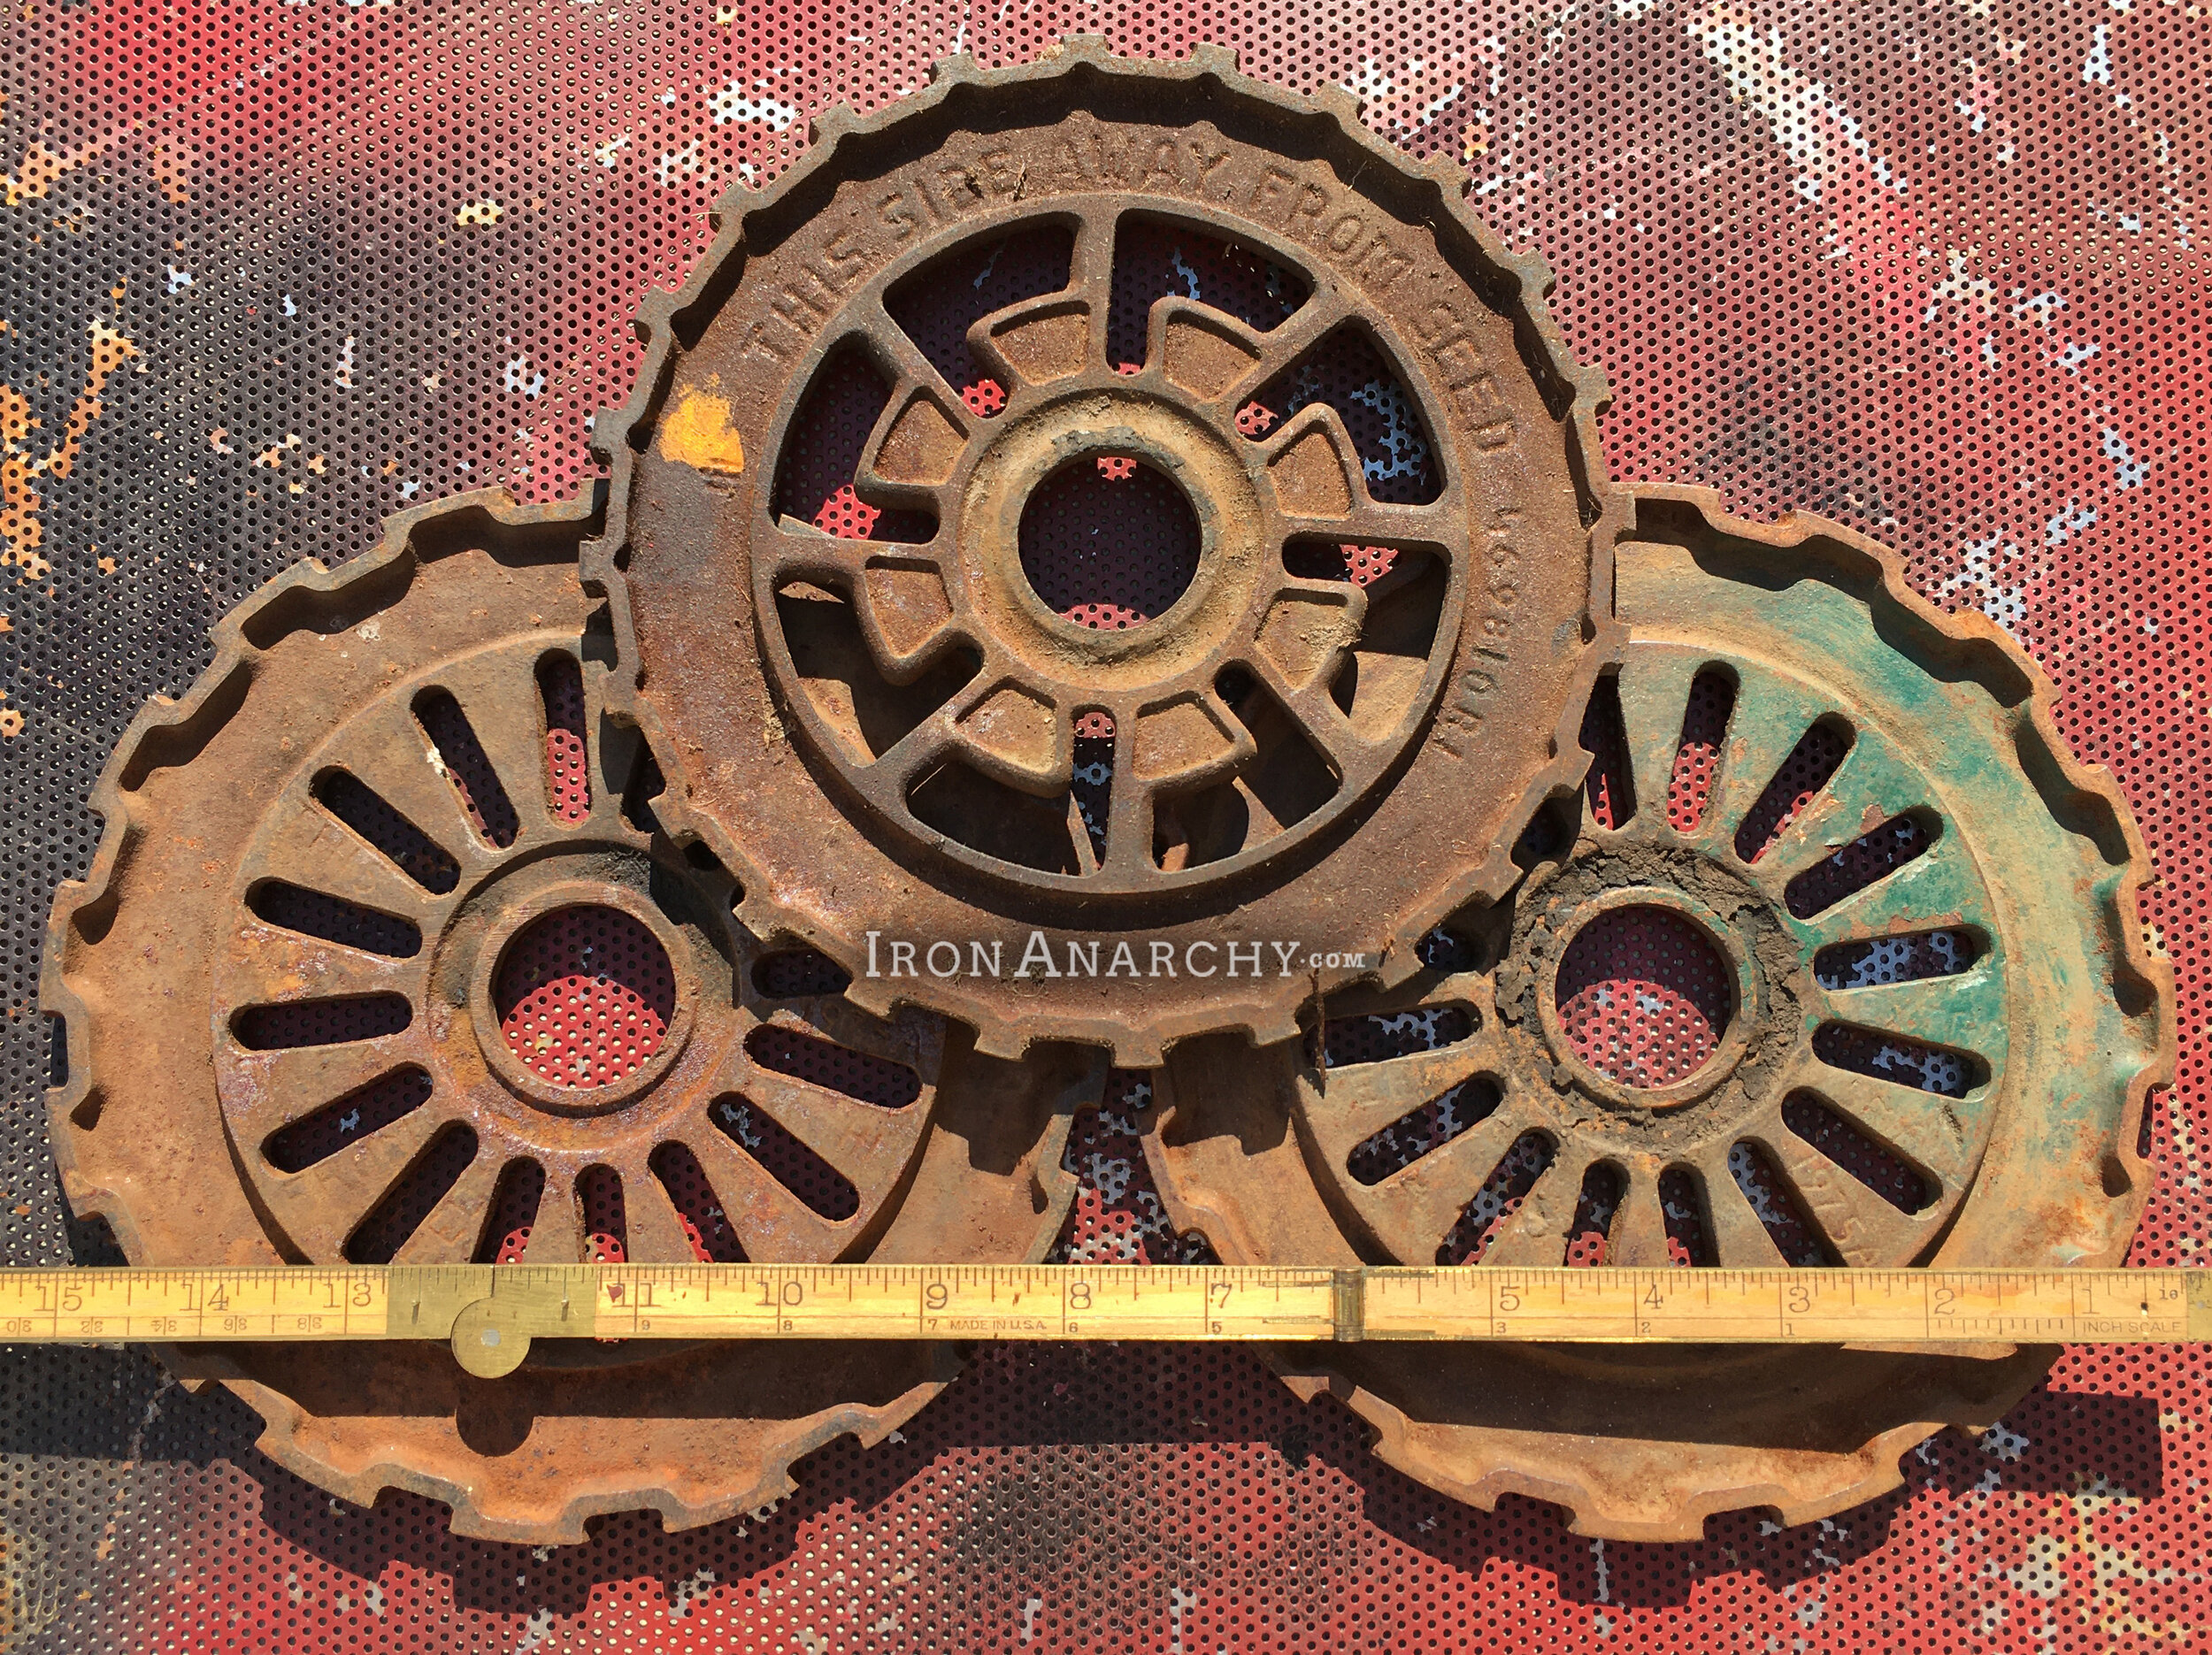 Antique Industrial Gears